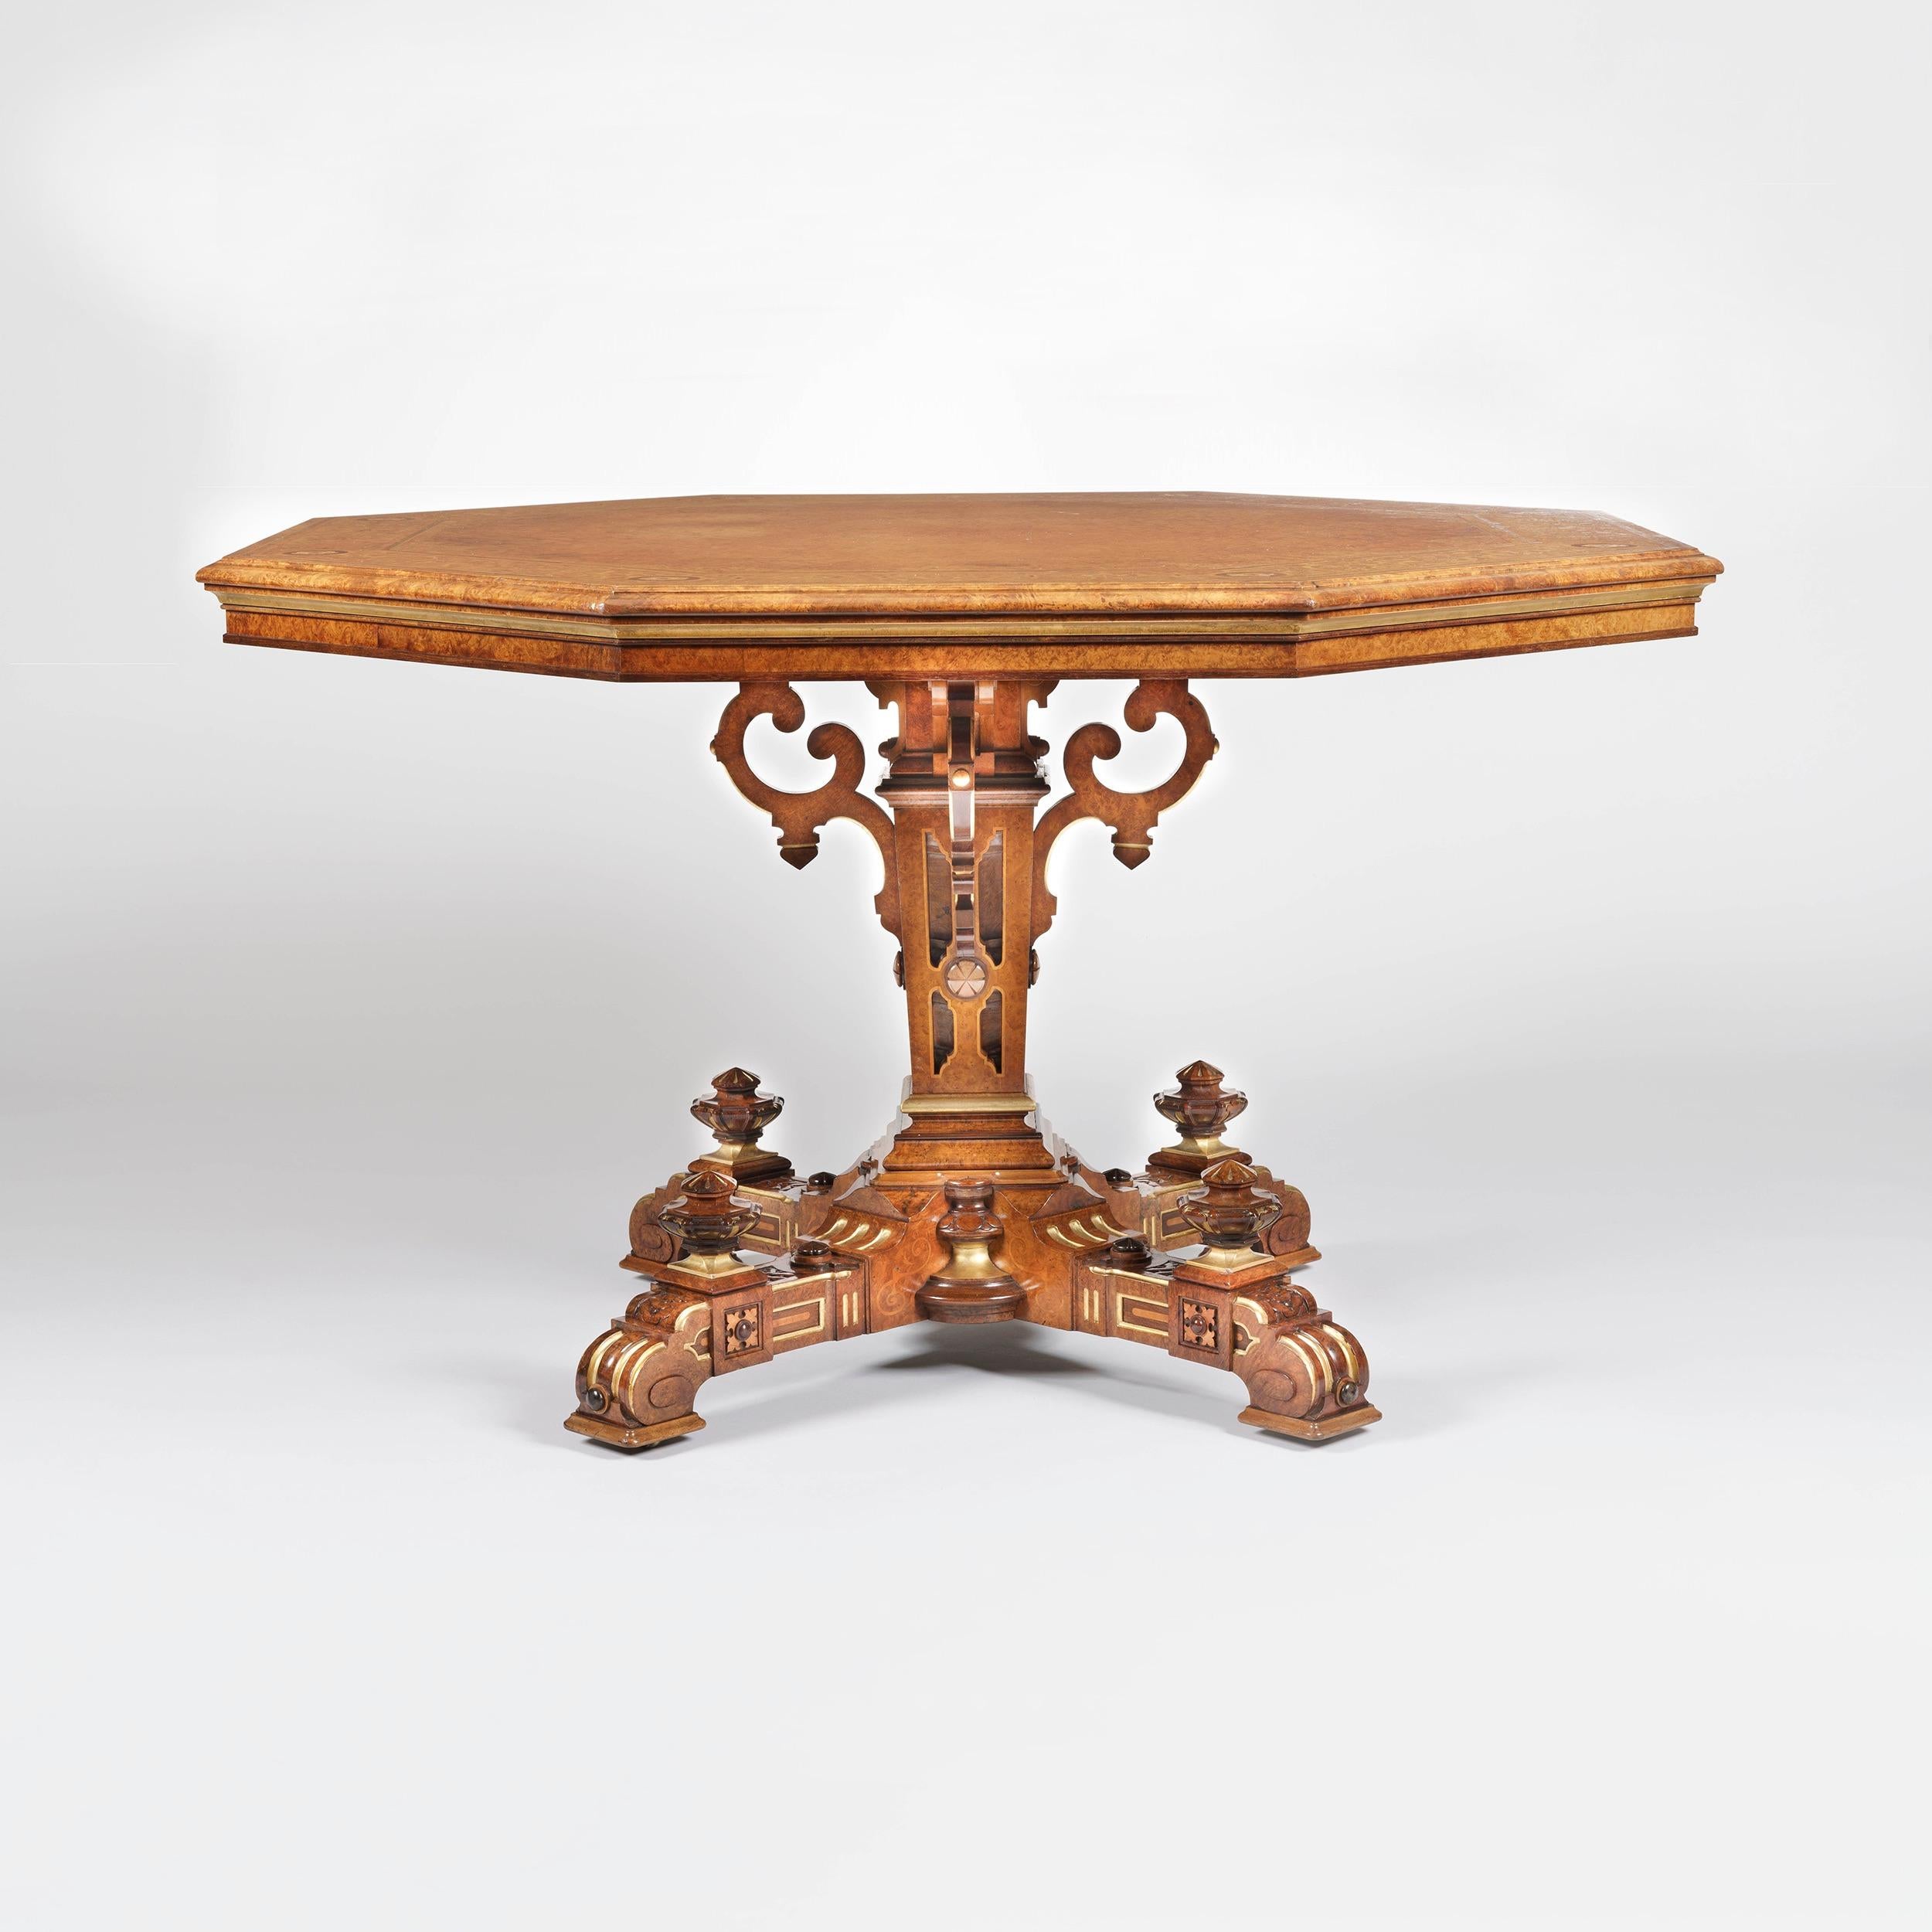 Ein guter Mitteltisch
 von Johnstone & Jeanes aus London
 
Hergestellt aus Amboyna, mit umfangreichen Intarsien in Holzproben und mit paketvergoldeten Akzenten versehen. Auf einem kreuzförmigen Sockel, der mit Knäufen verziert ist und verdeckte